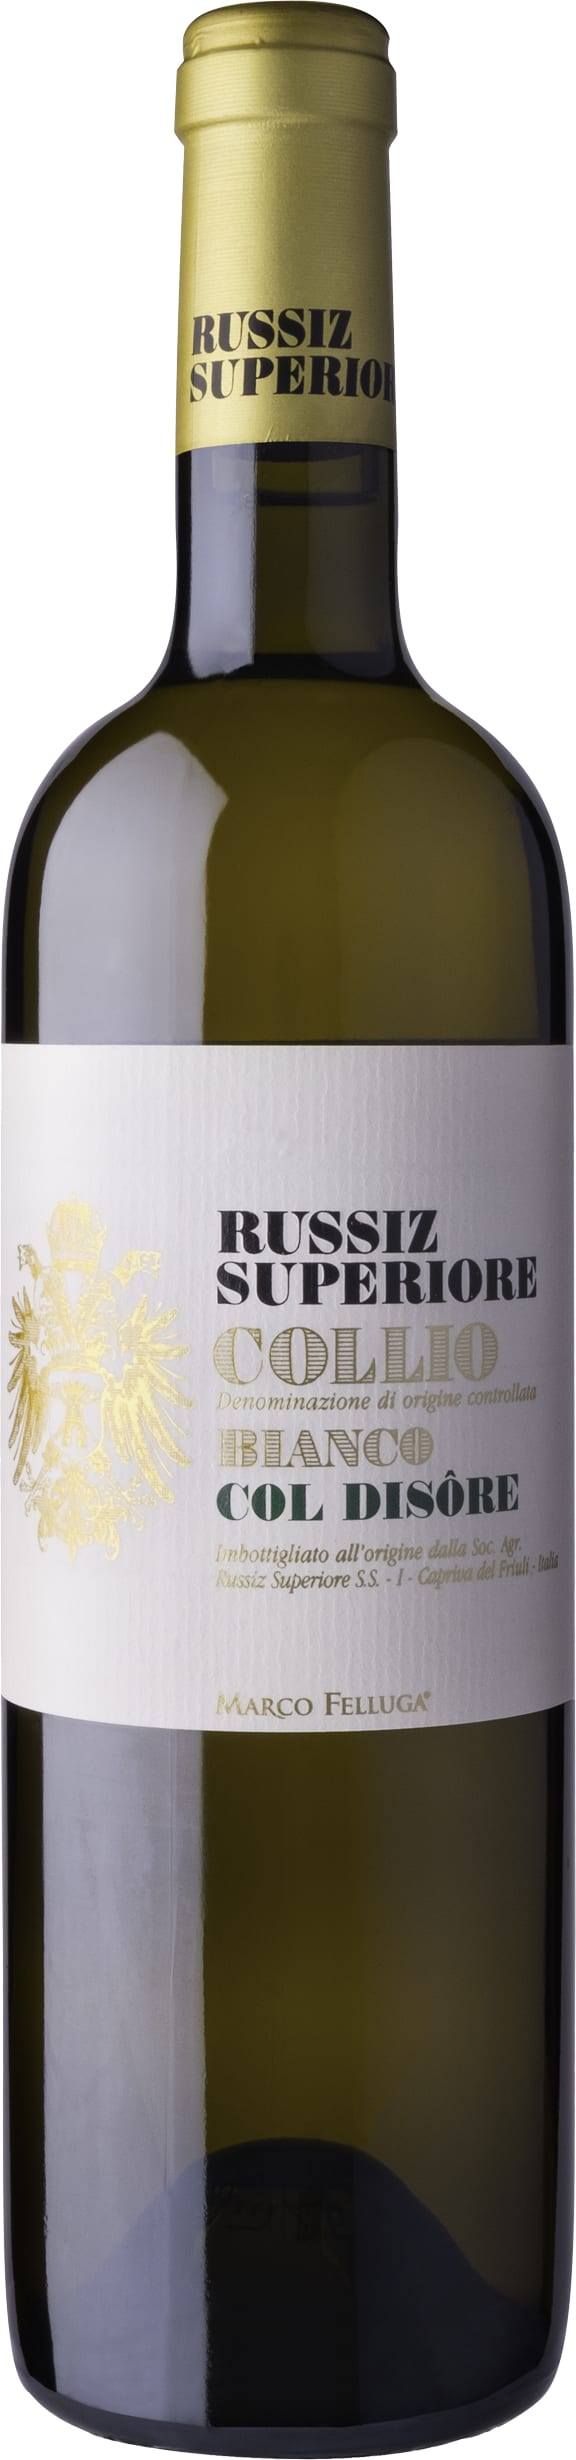 Russiz Superiore Bianco Col Disore, Collio 2017 6x75cl - Just Wines 